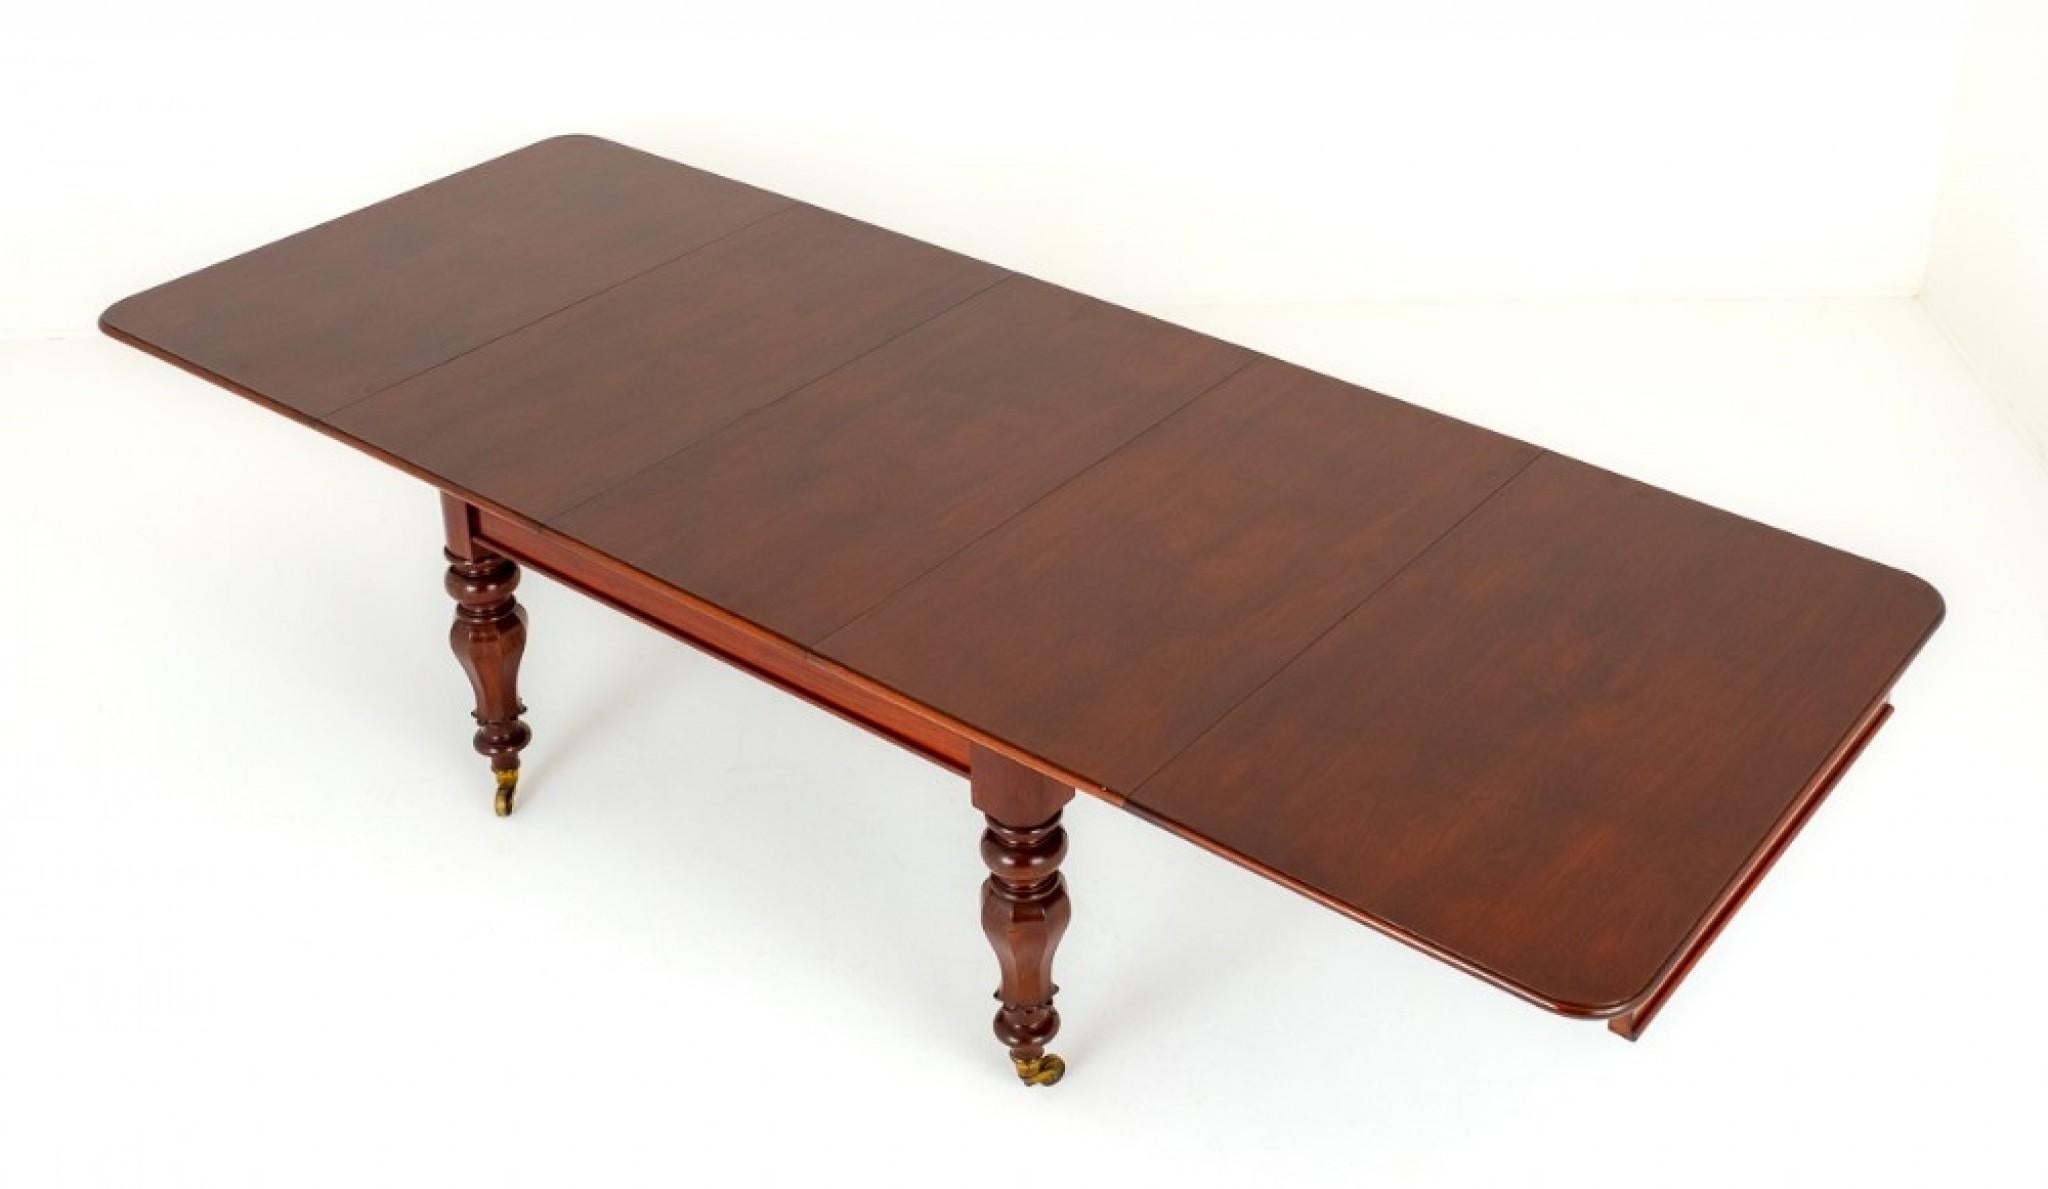 William IV Mahagoni Ausziehbarer Esstisch.
Dieser Tisch steht auf achteckigen und ringförmig gedrechselten Beinen mit Original-Messingrollen.
CIRCA 19. Jahrhundert
Der Tisch lässt sich durch einen ausziehbaren Teleskopmechanismus um bis zu 3